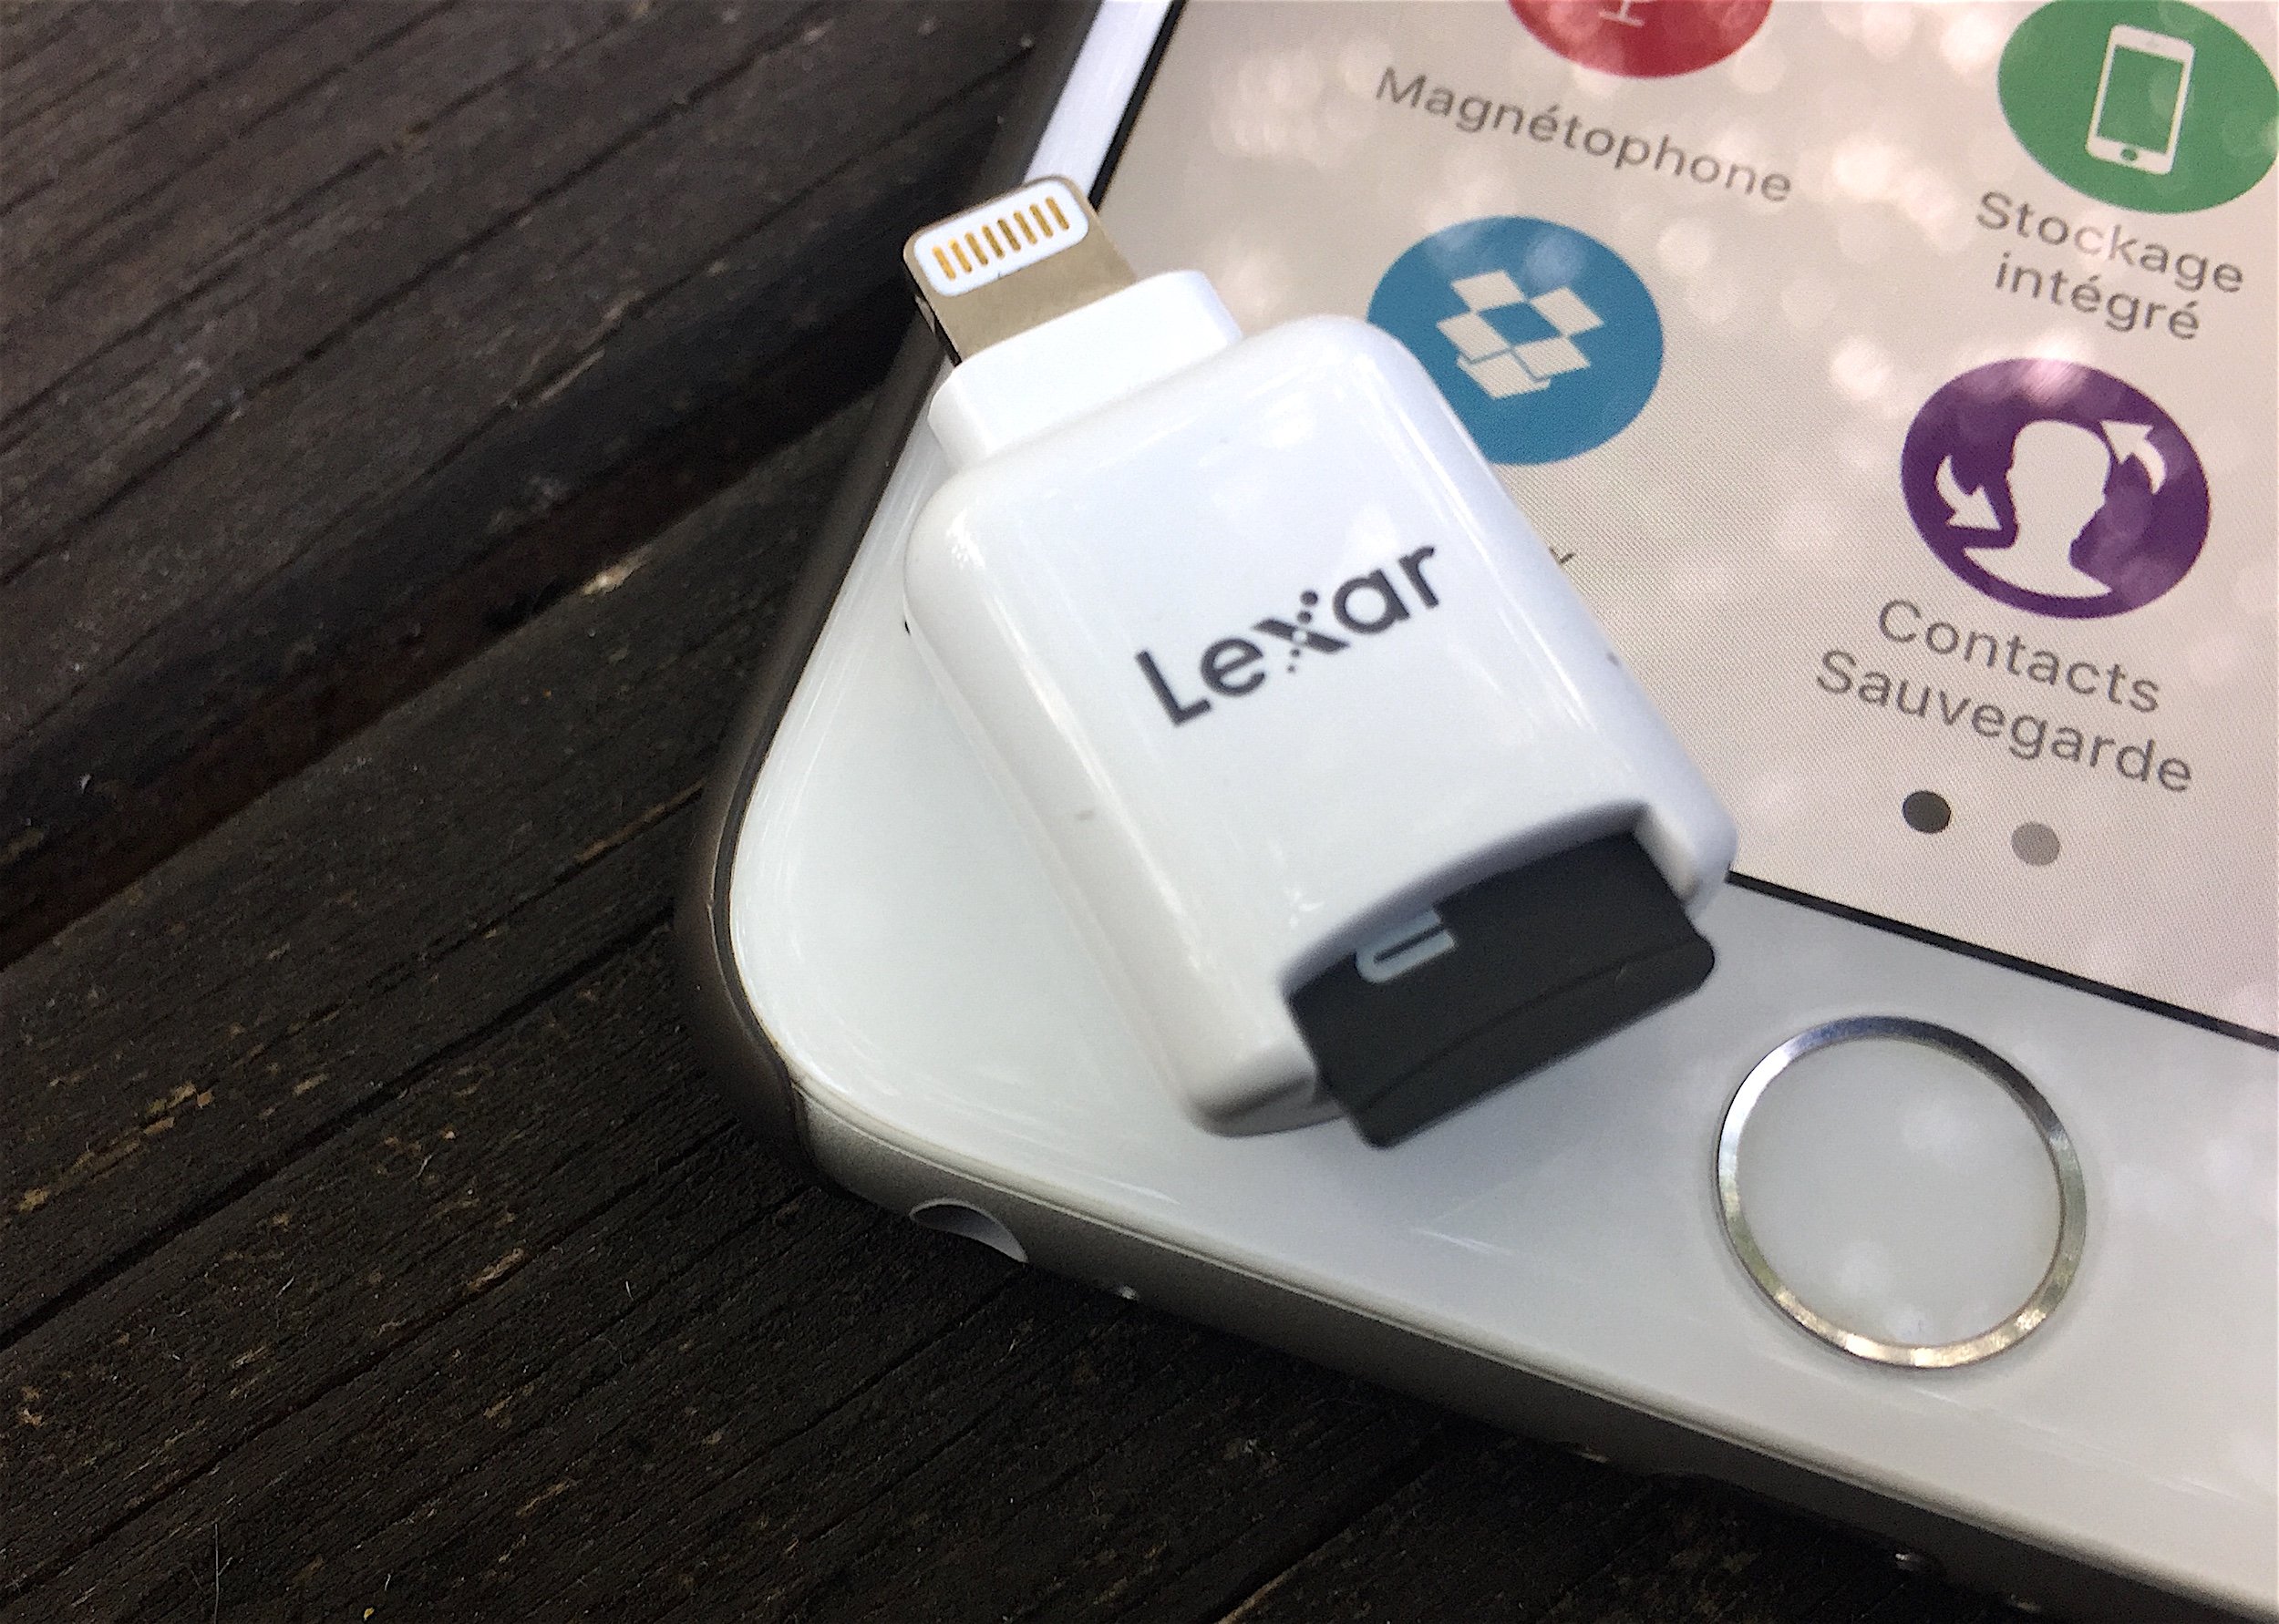 Lecteur de carte microSD pour iPhone et iPad, la solution Lexar